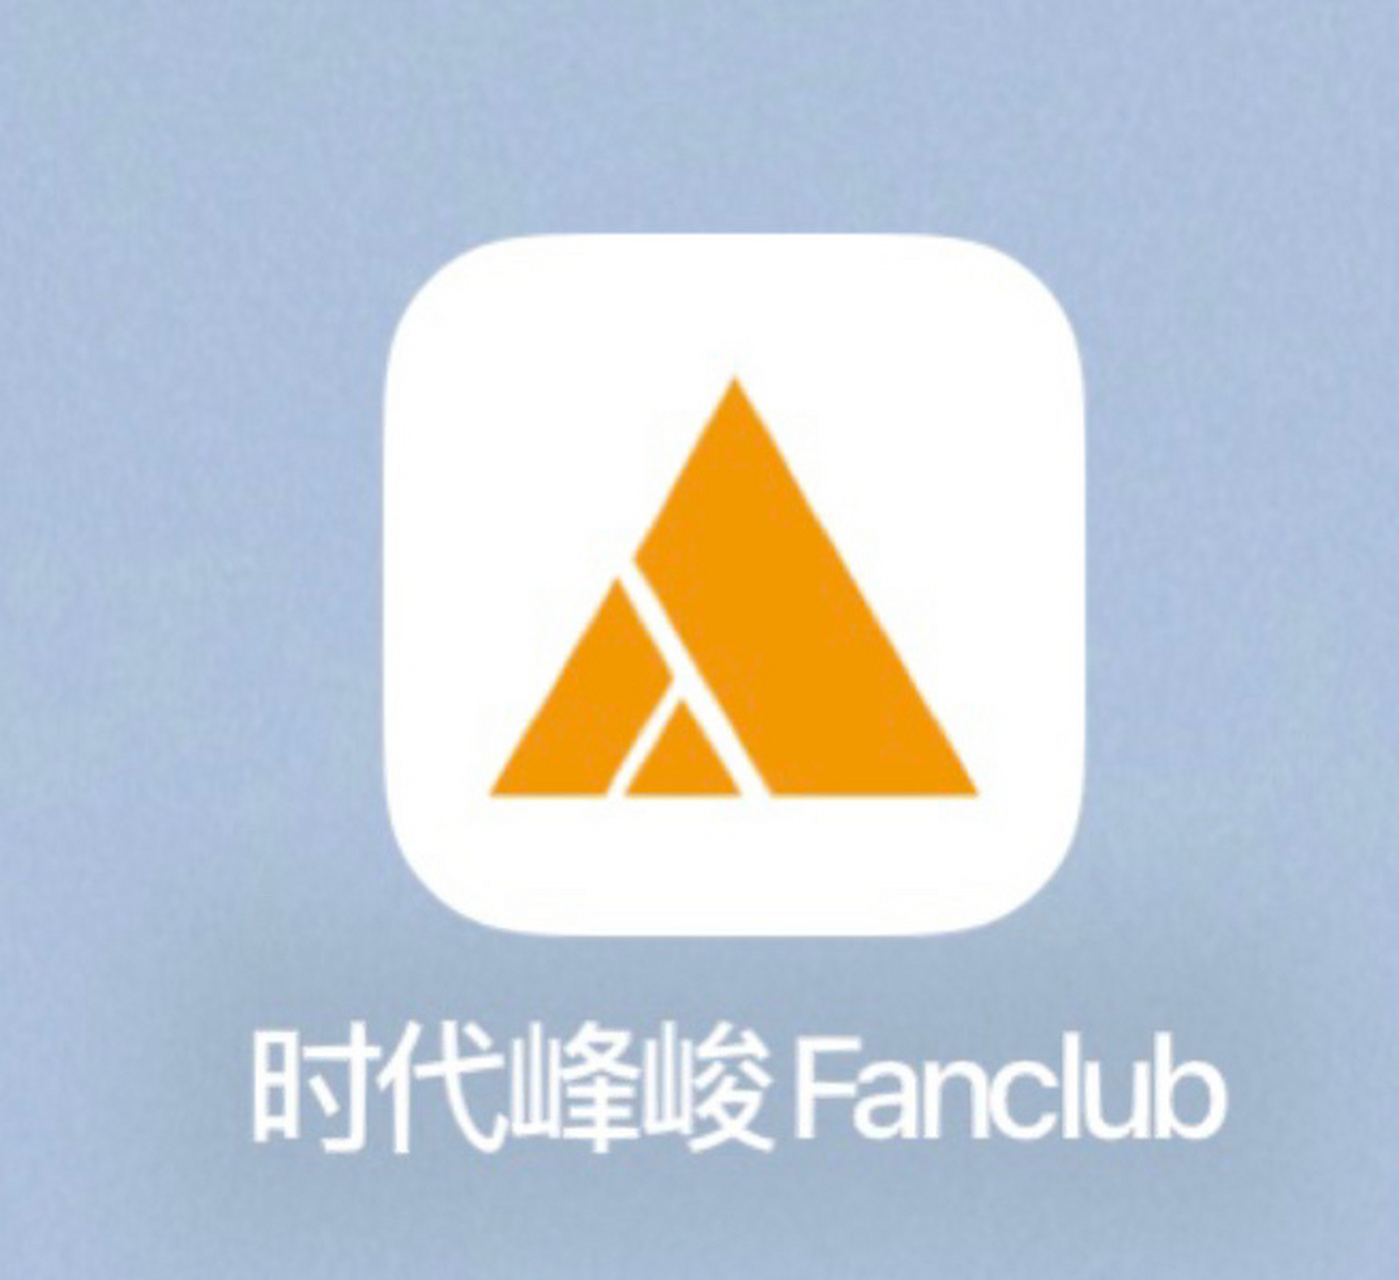 时代峰峻app下载指南 1,苹果: 直接在apple store 搜索时代峰俊 app